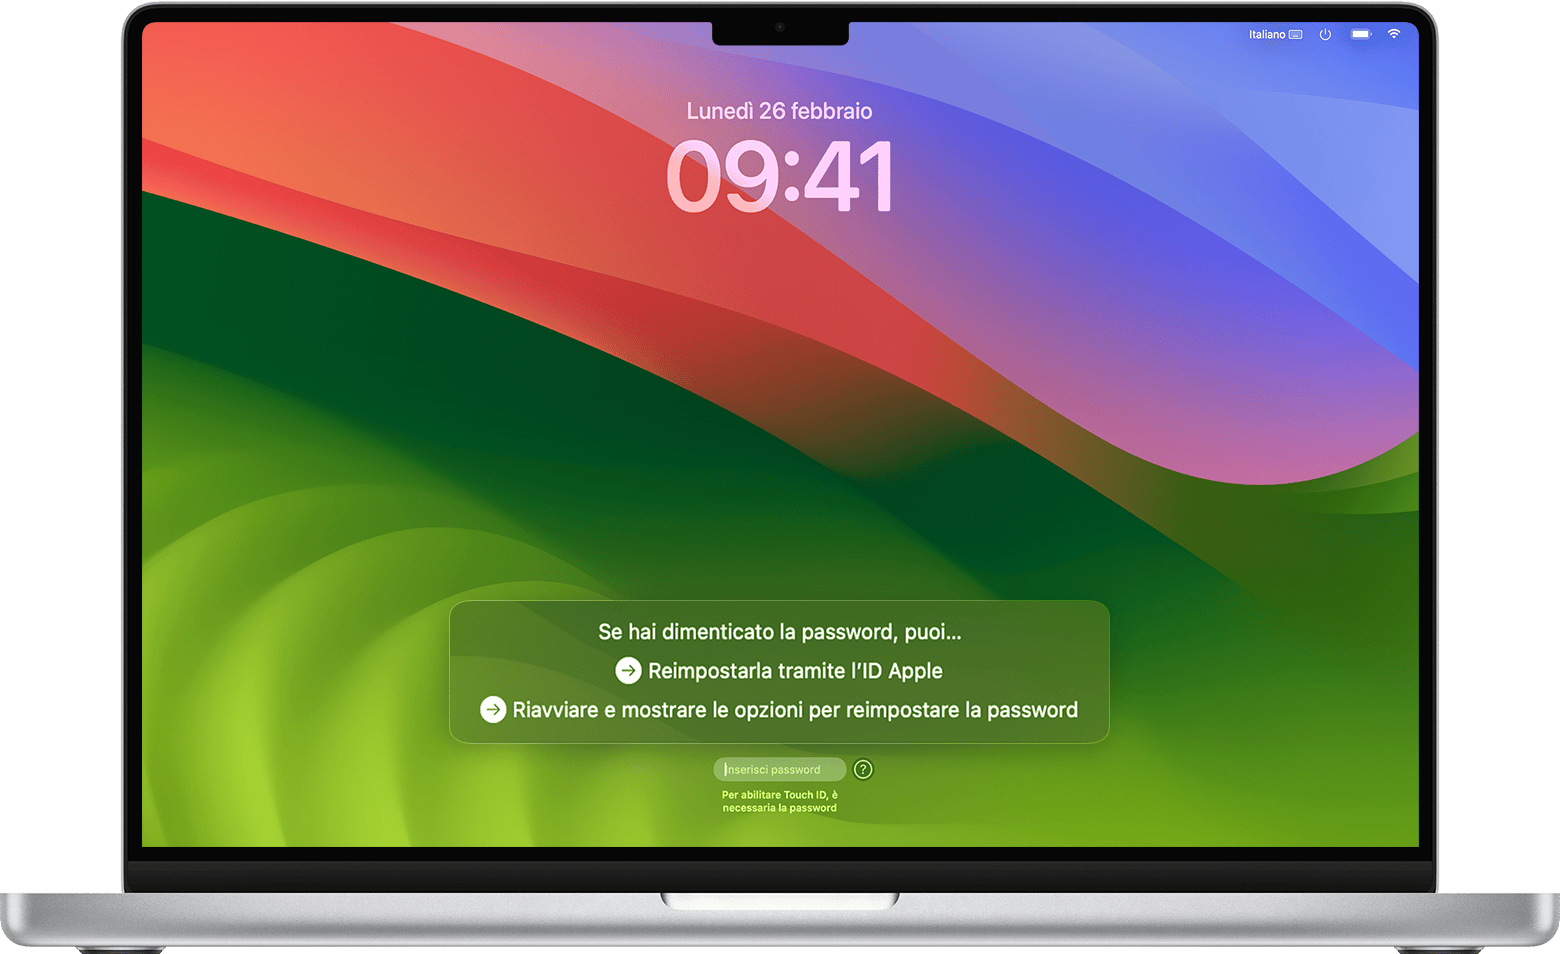 Opzioni per reimpostare la password nella finestra di login in macOS Sonoma